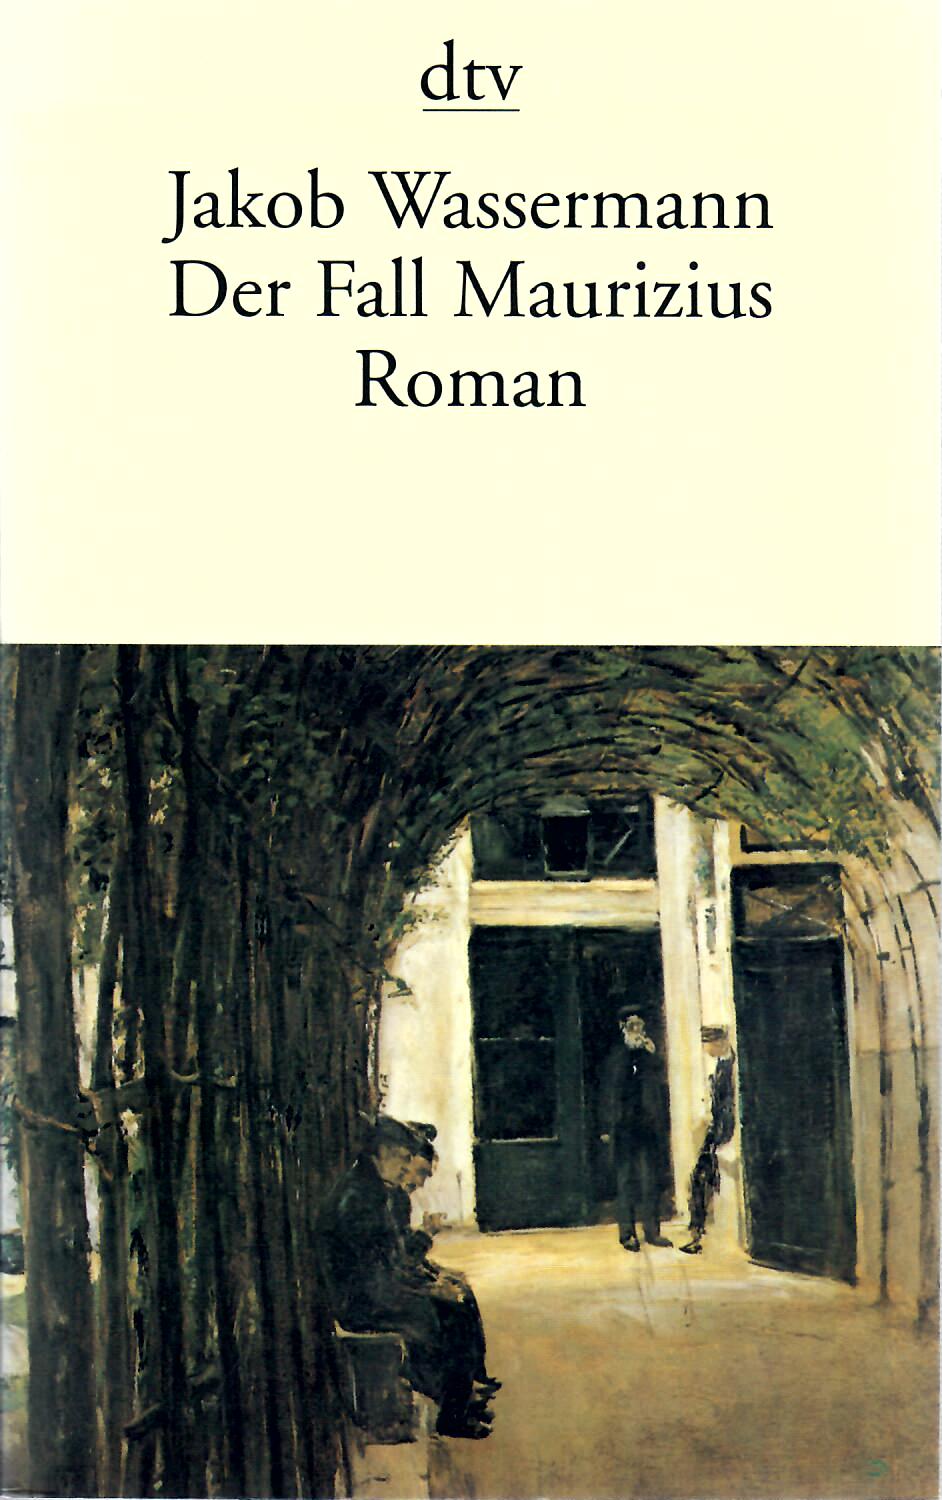 Wassermann, Jakob   : Der Fall Maurizius : Roman : Mit einem Nachwort von Peter de Mendelssohn Taschenbuchausgabe